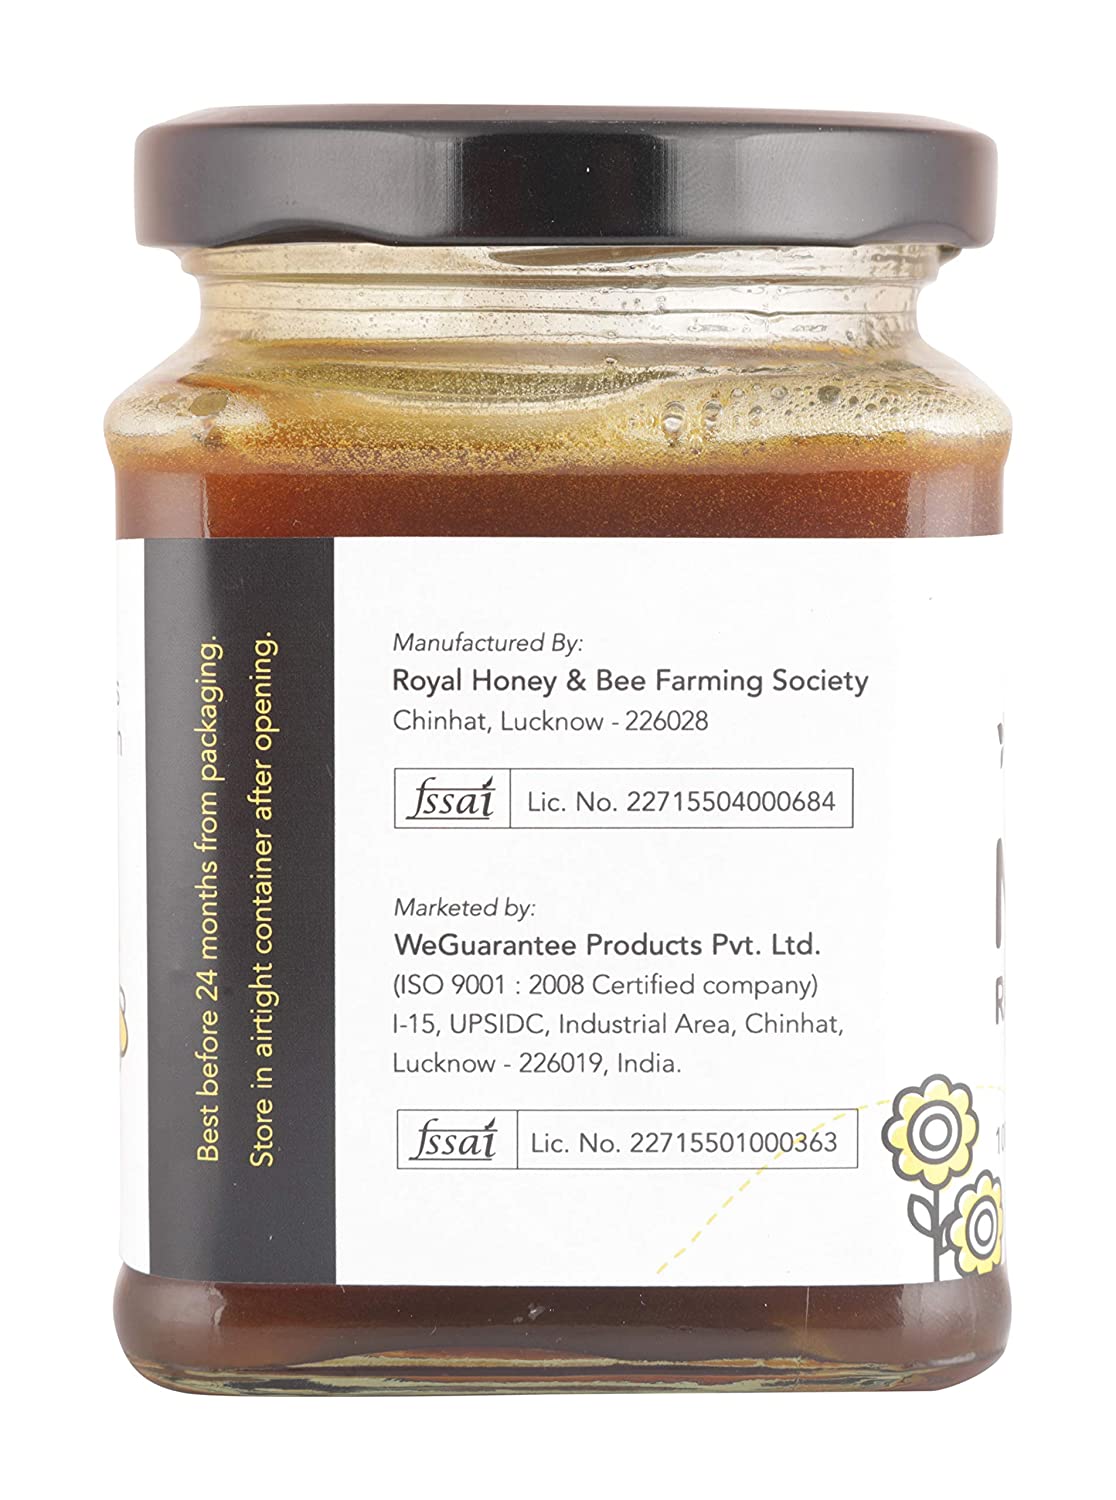 Weguarantee Organics Neem Honey, 300 Grams